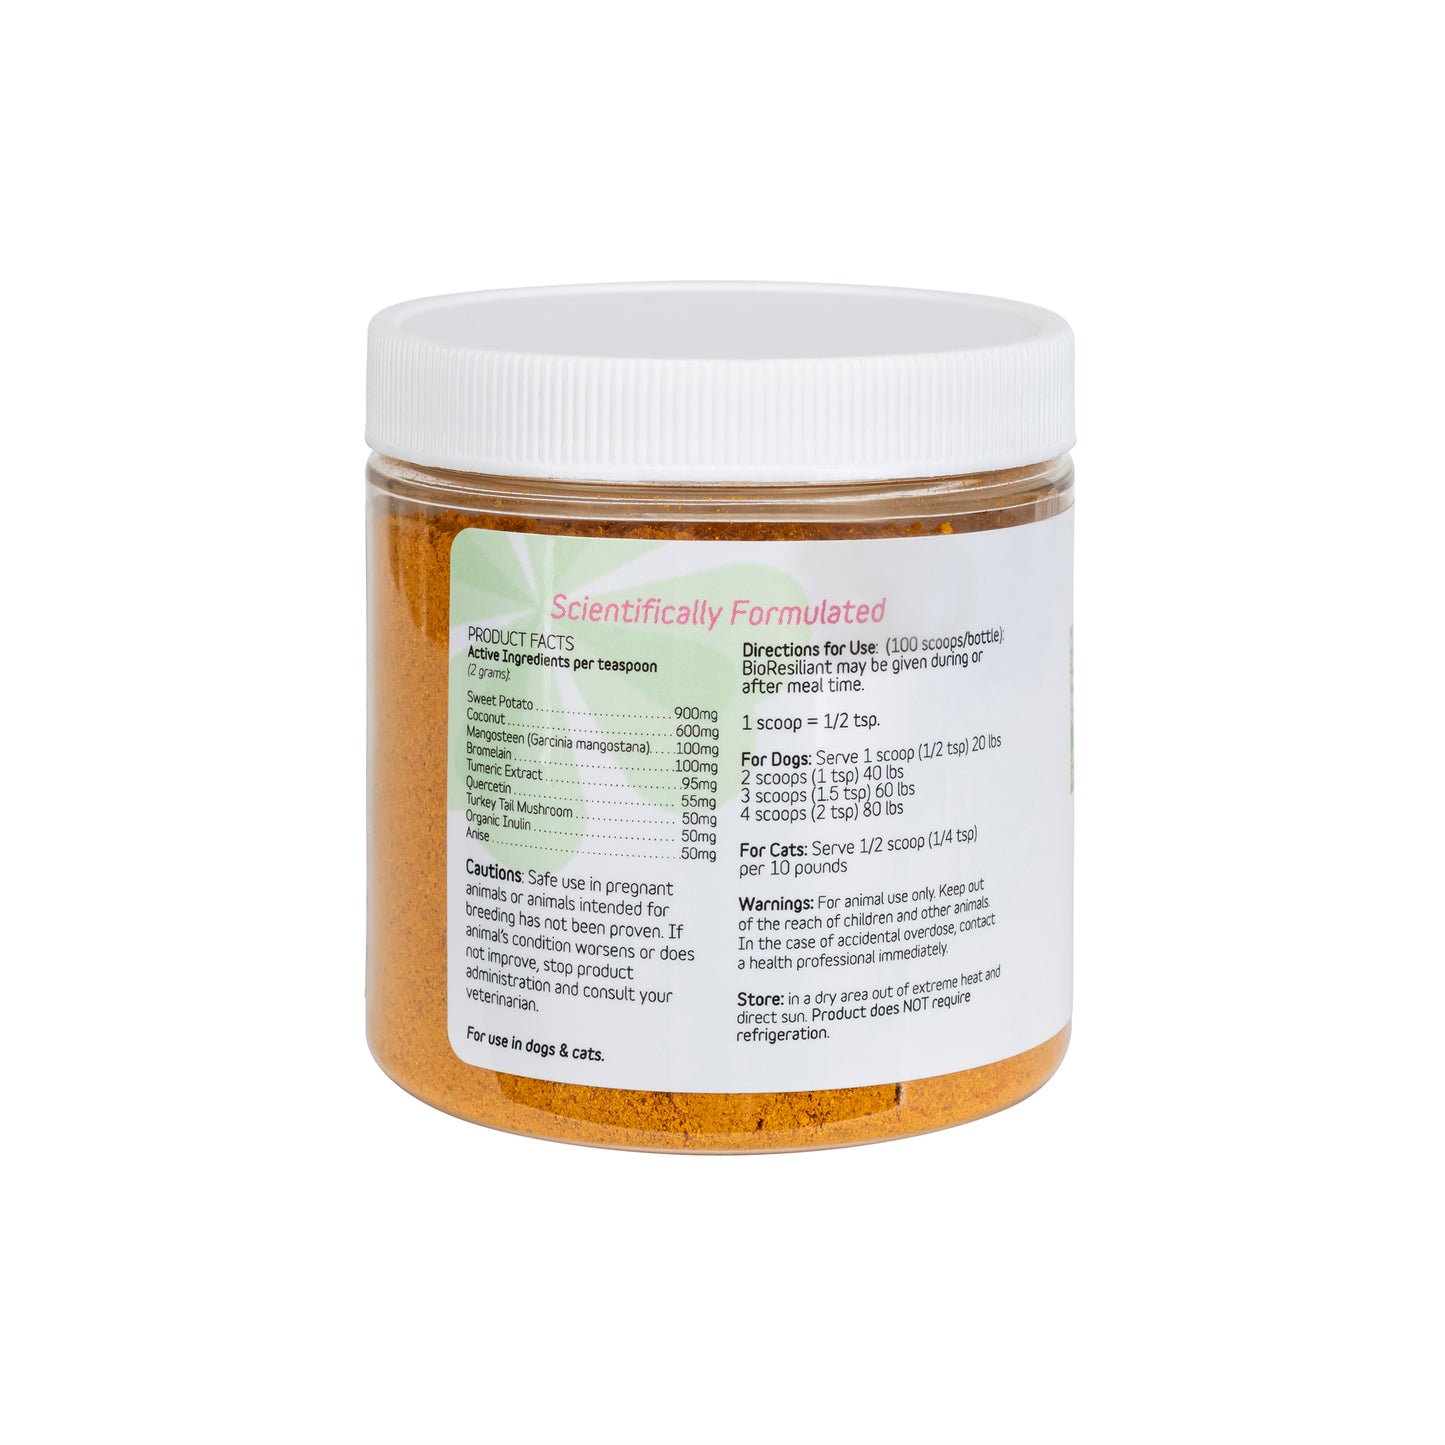 BioResiliant | Allergy Supplement Powder - 3.5oz